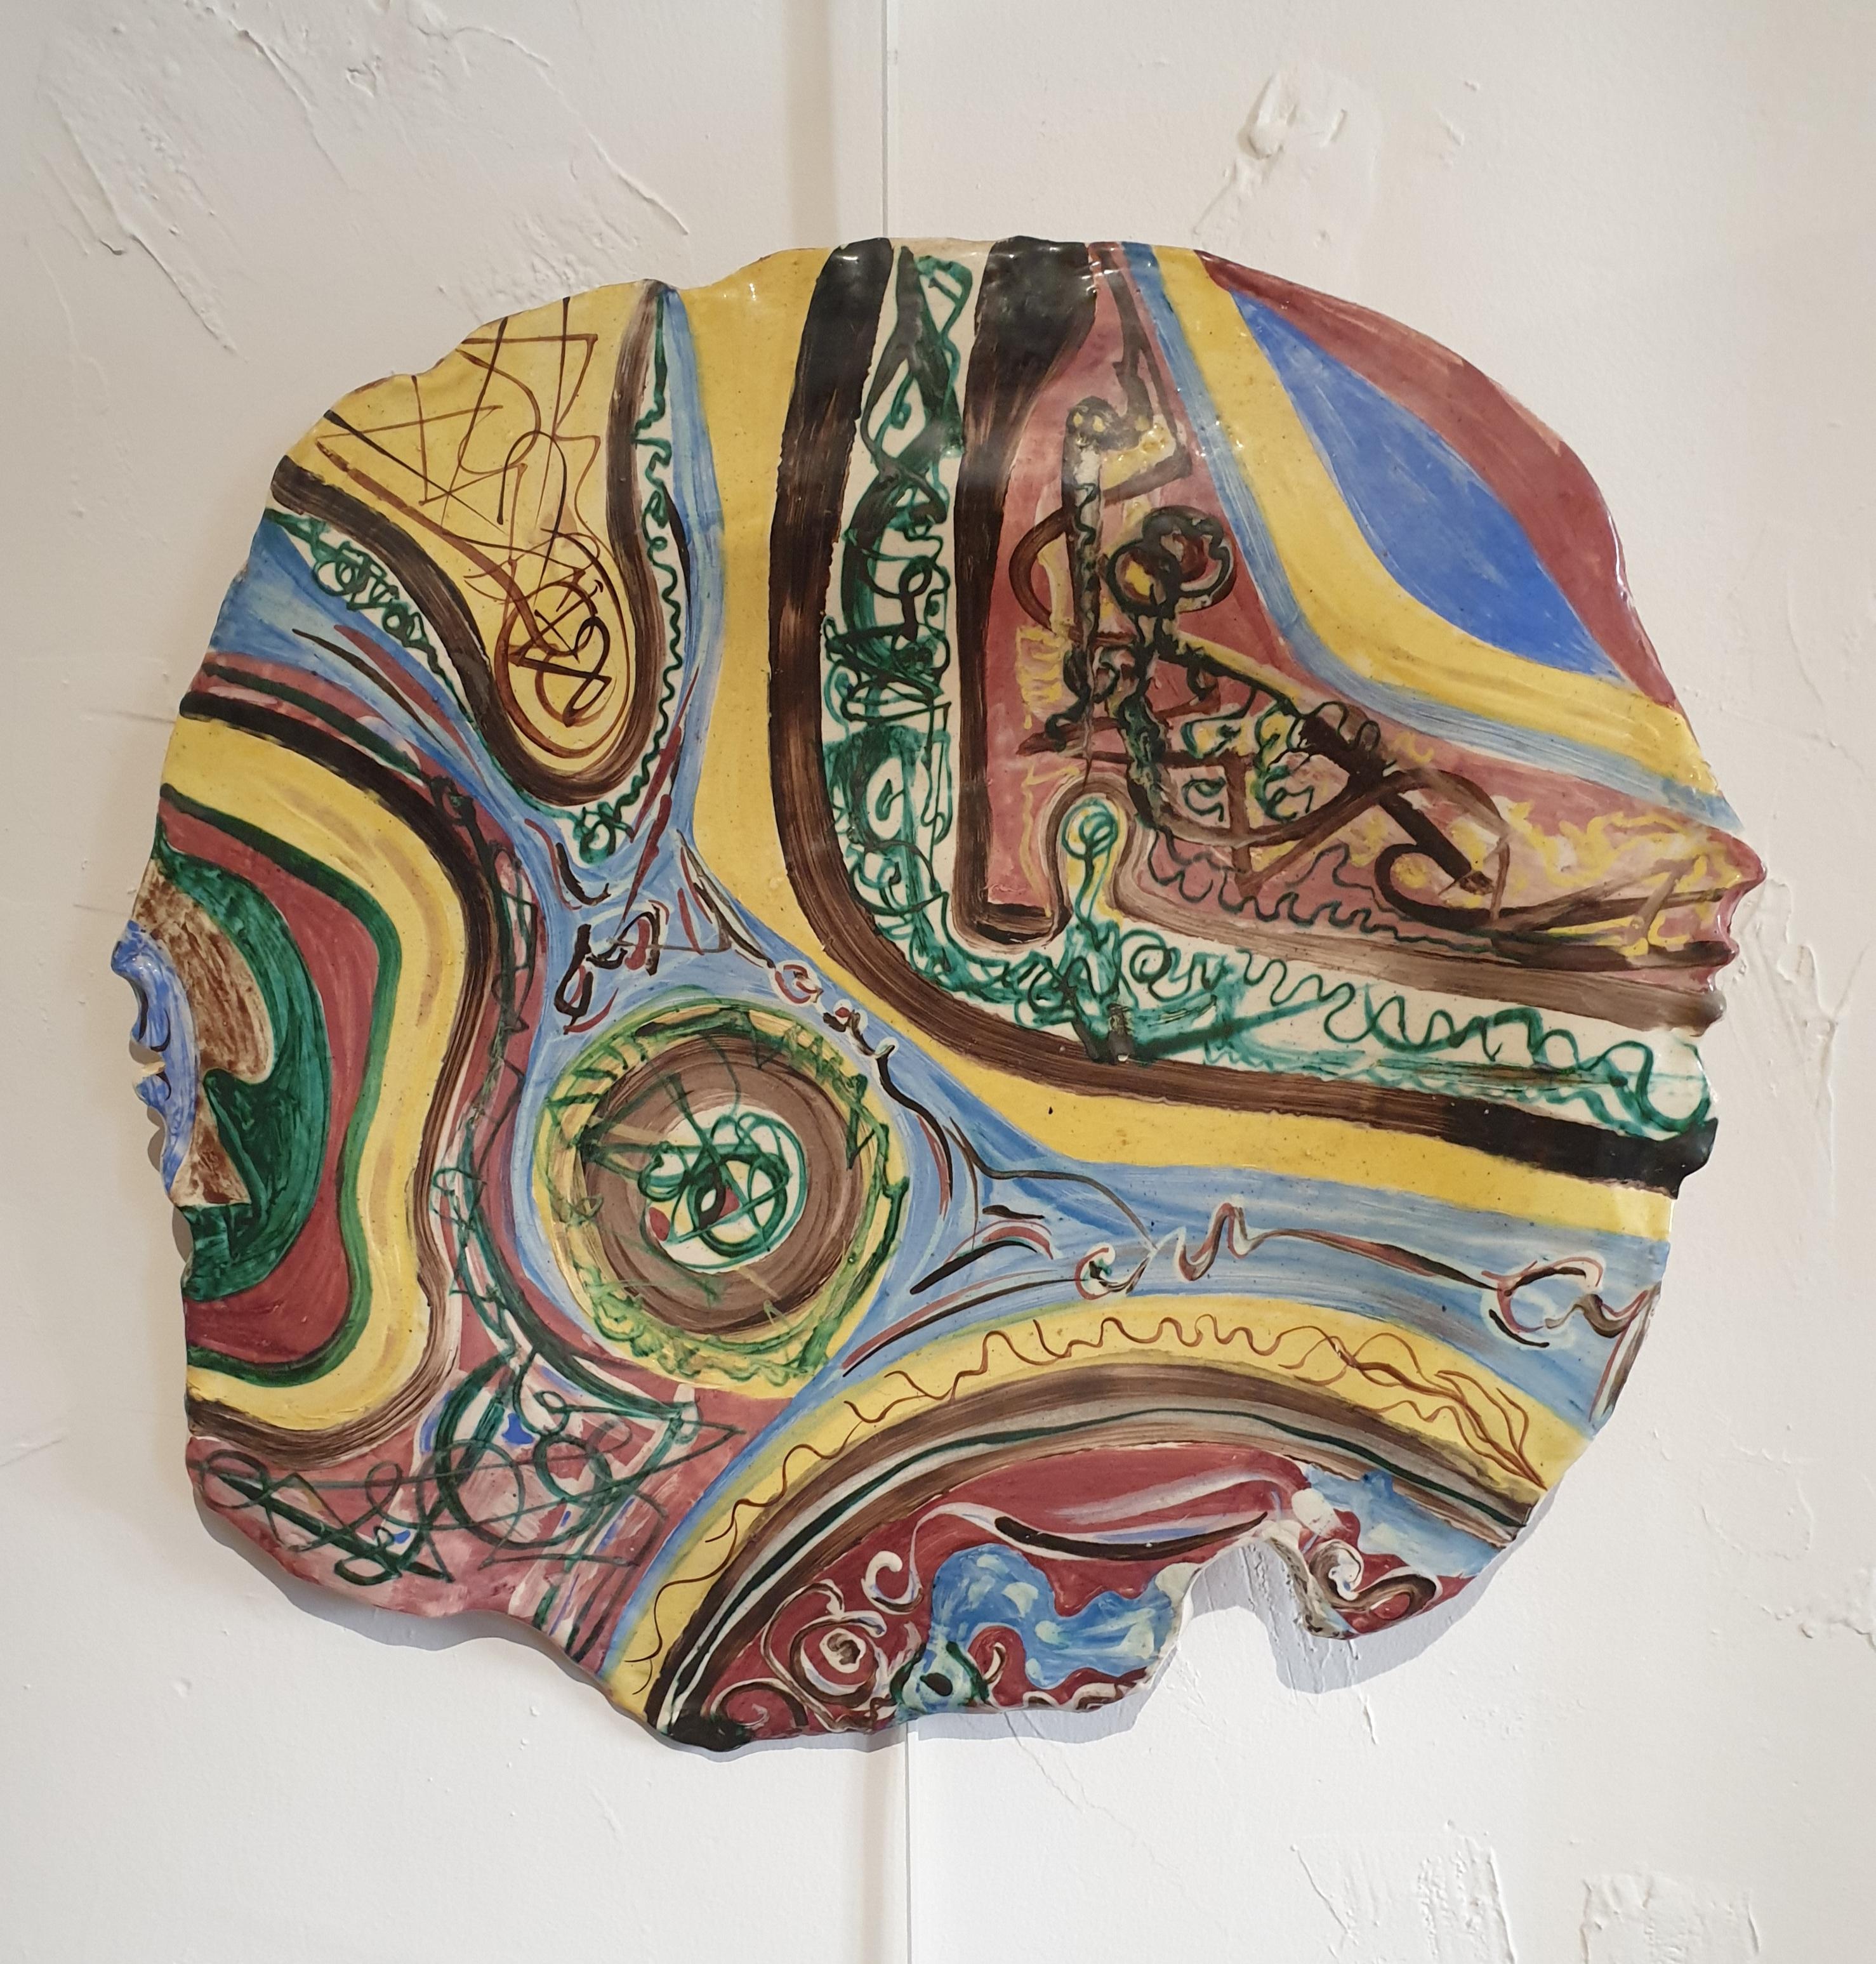 
Abstrakte expressionistische Keramik des französischen Künstlers Claude Urbani. Auf der Vorderseite signiert und datiert 93. Auf der Rückseite ist Antibes 1993 eingeschnitten.
Keramiker, Bildhauer, Modellierer und Maler.
In der Altstadt von Antibes